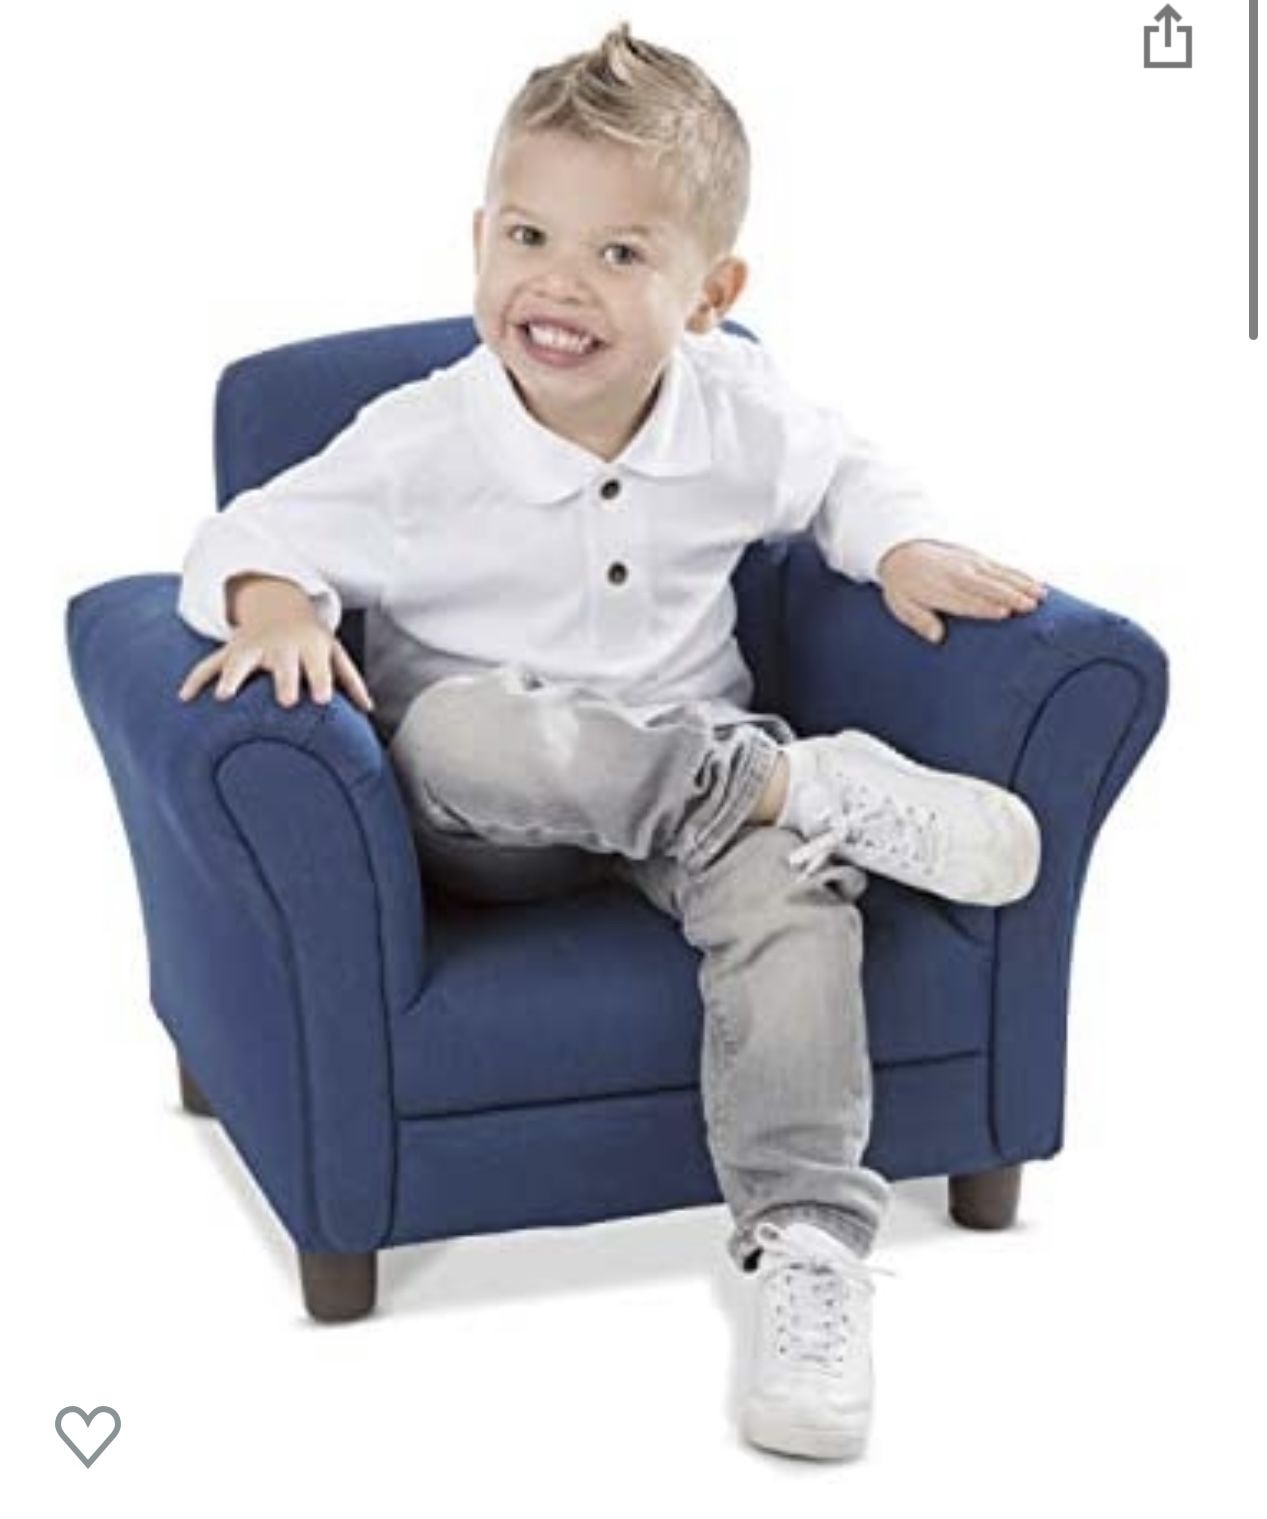 Melissa & Doug Denim Fabric Child's Armchair (Kid's Furniture, 23"L x 17.5"W x 18.3"H)